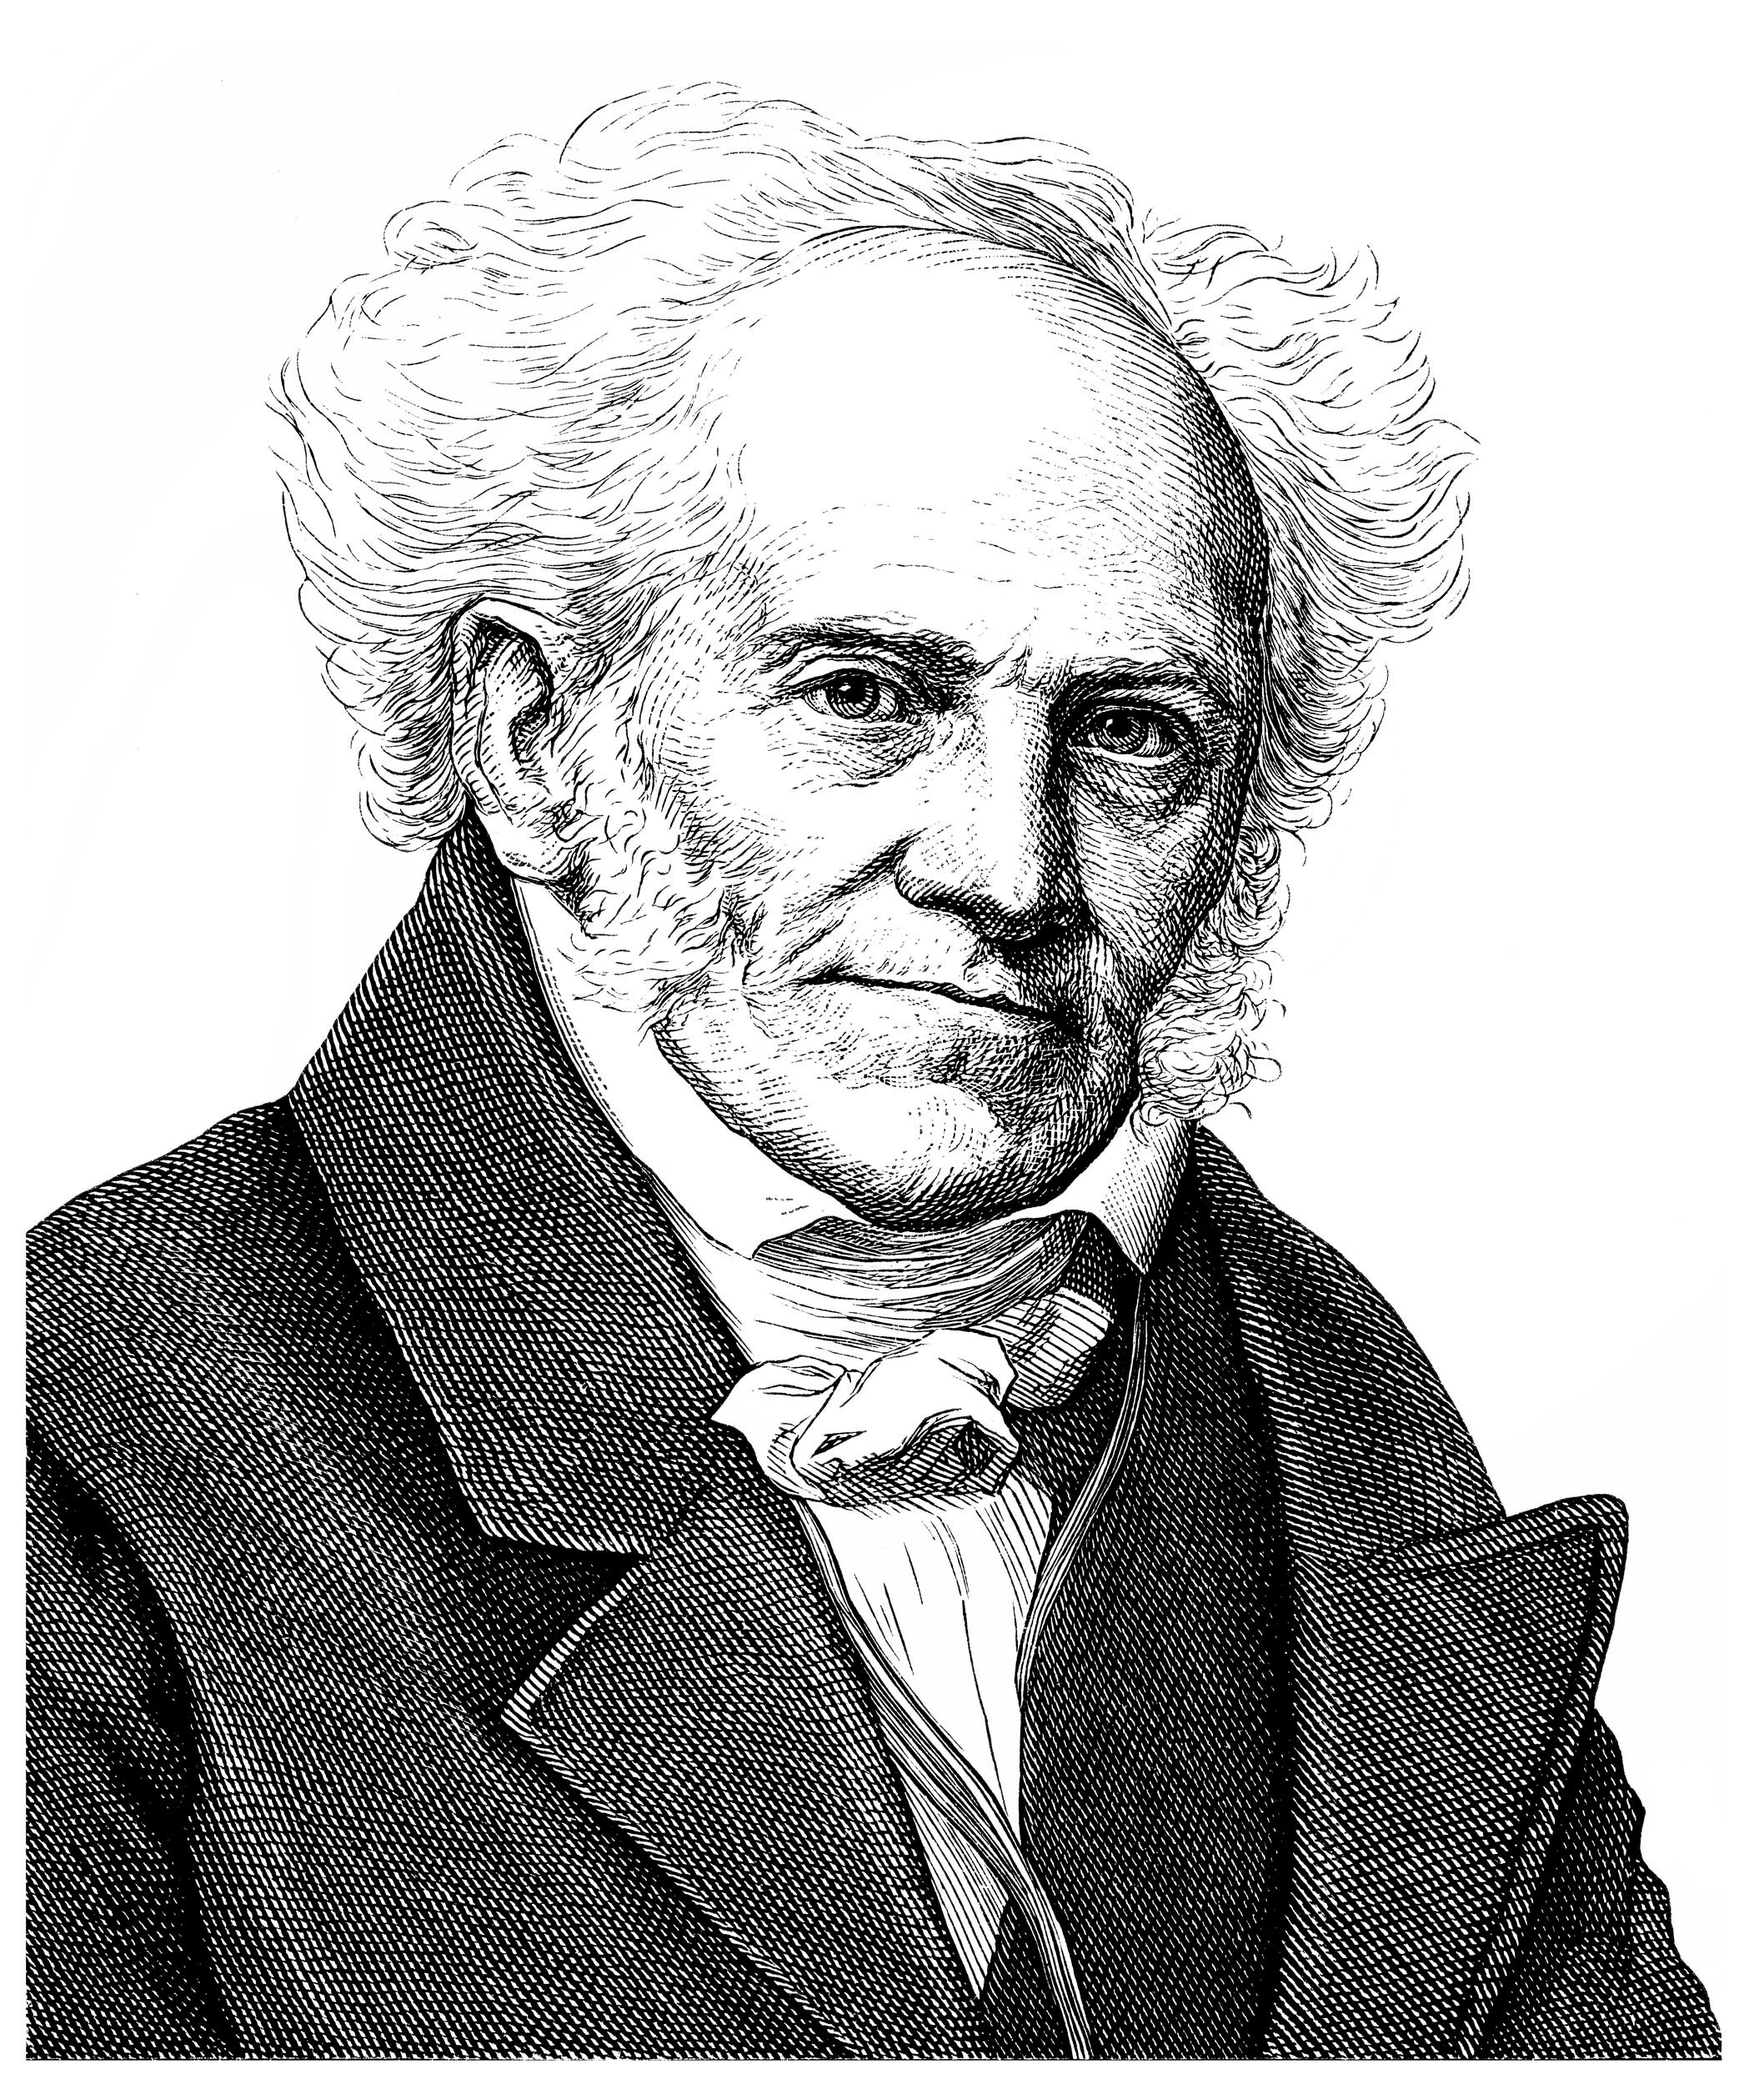 Arthur Schopenhauer portrait drawing